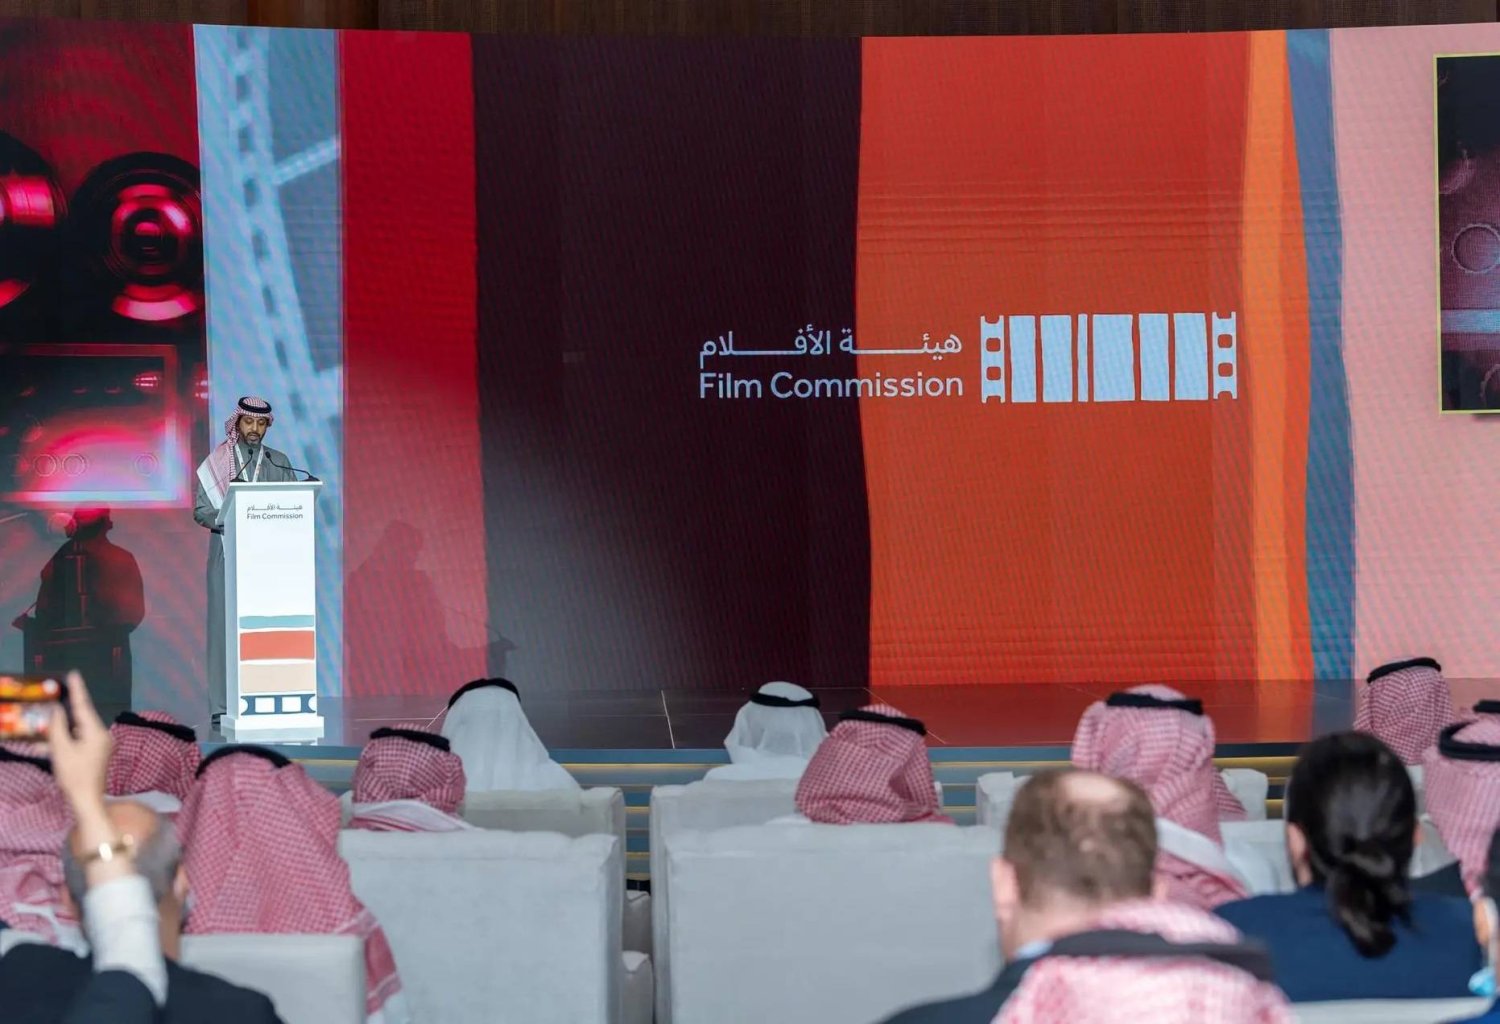 تأتي الاستضافة ضمن جهود الهيئة لدعم الحراك السينمائي السعودي والخليجي (واس)